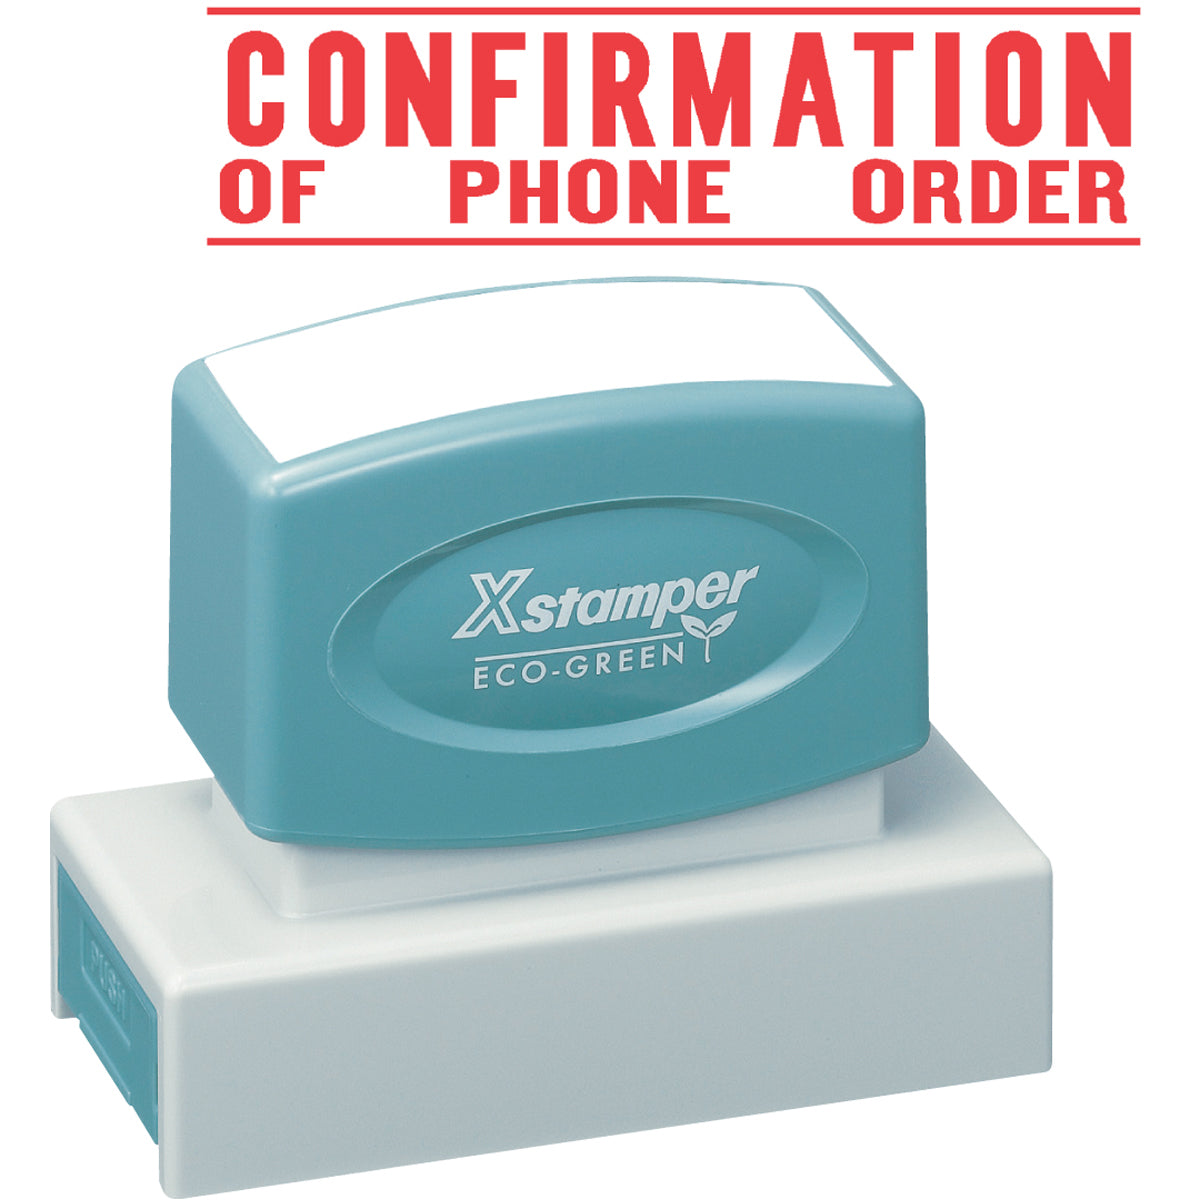 Xstamper 3214  Confirmation of Phone Order